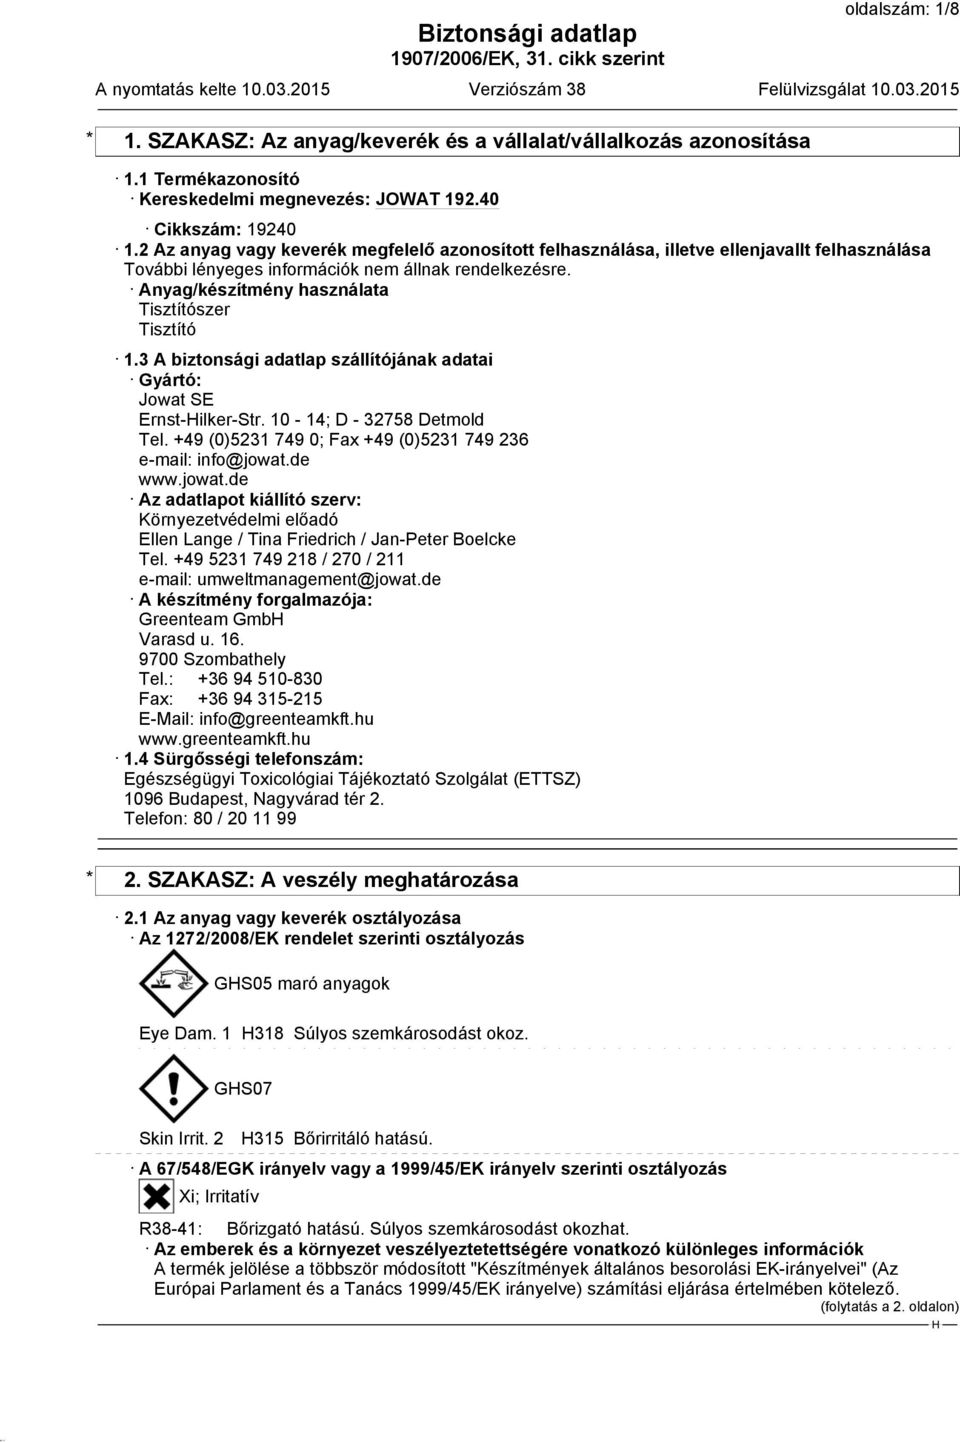 3 A biztonsági adatlap szállítójának adatai Gyártó: Jowat SE Ernst-ilker-Str. 10-14; D - 32758 Detmold Tel. +49 (0)5231 749 0; Fax +49 (0)5231 749 236 e-mail: info@jowat.